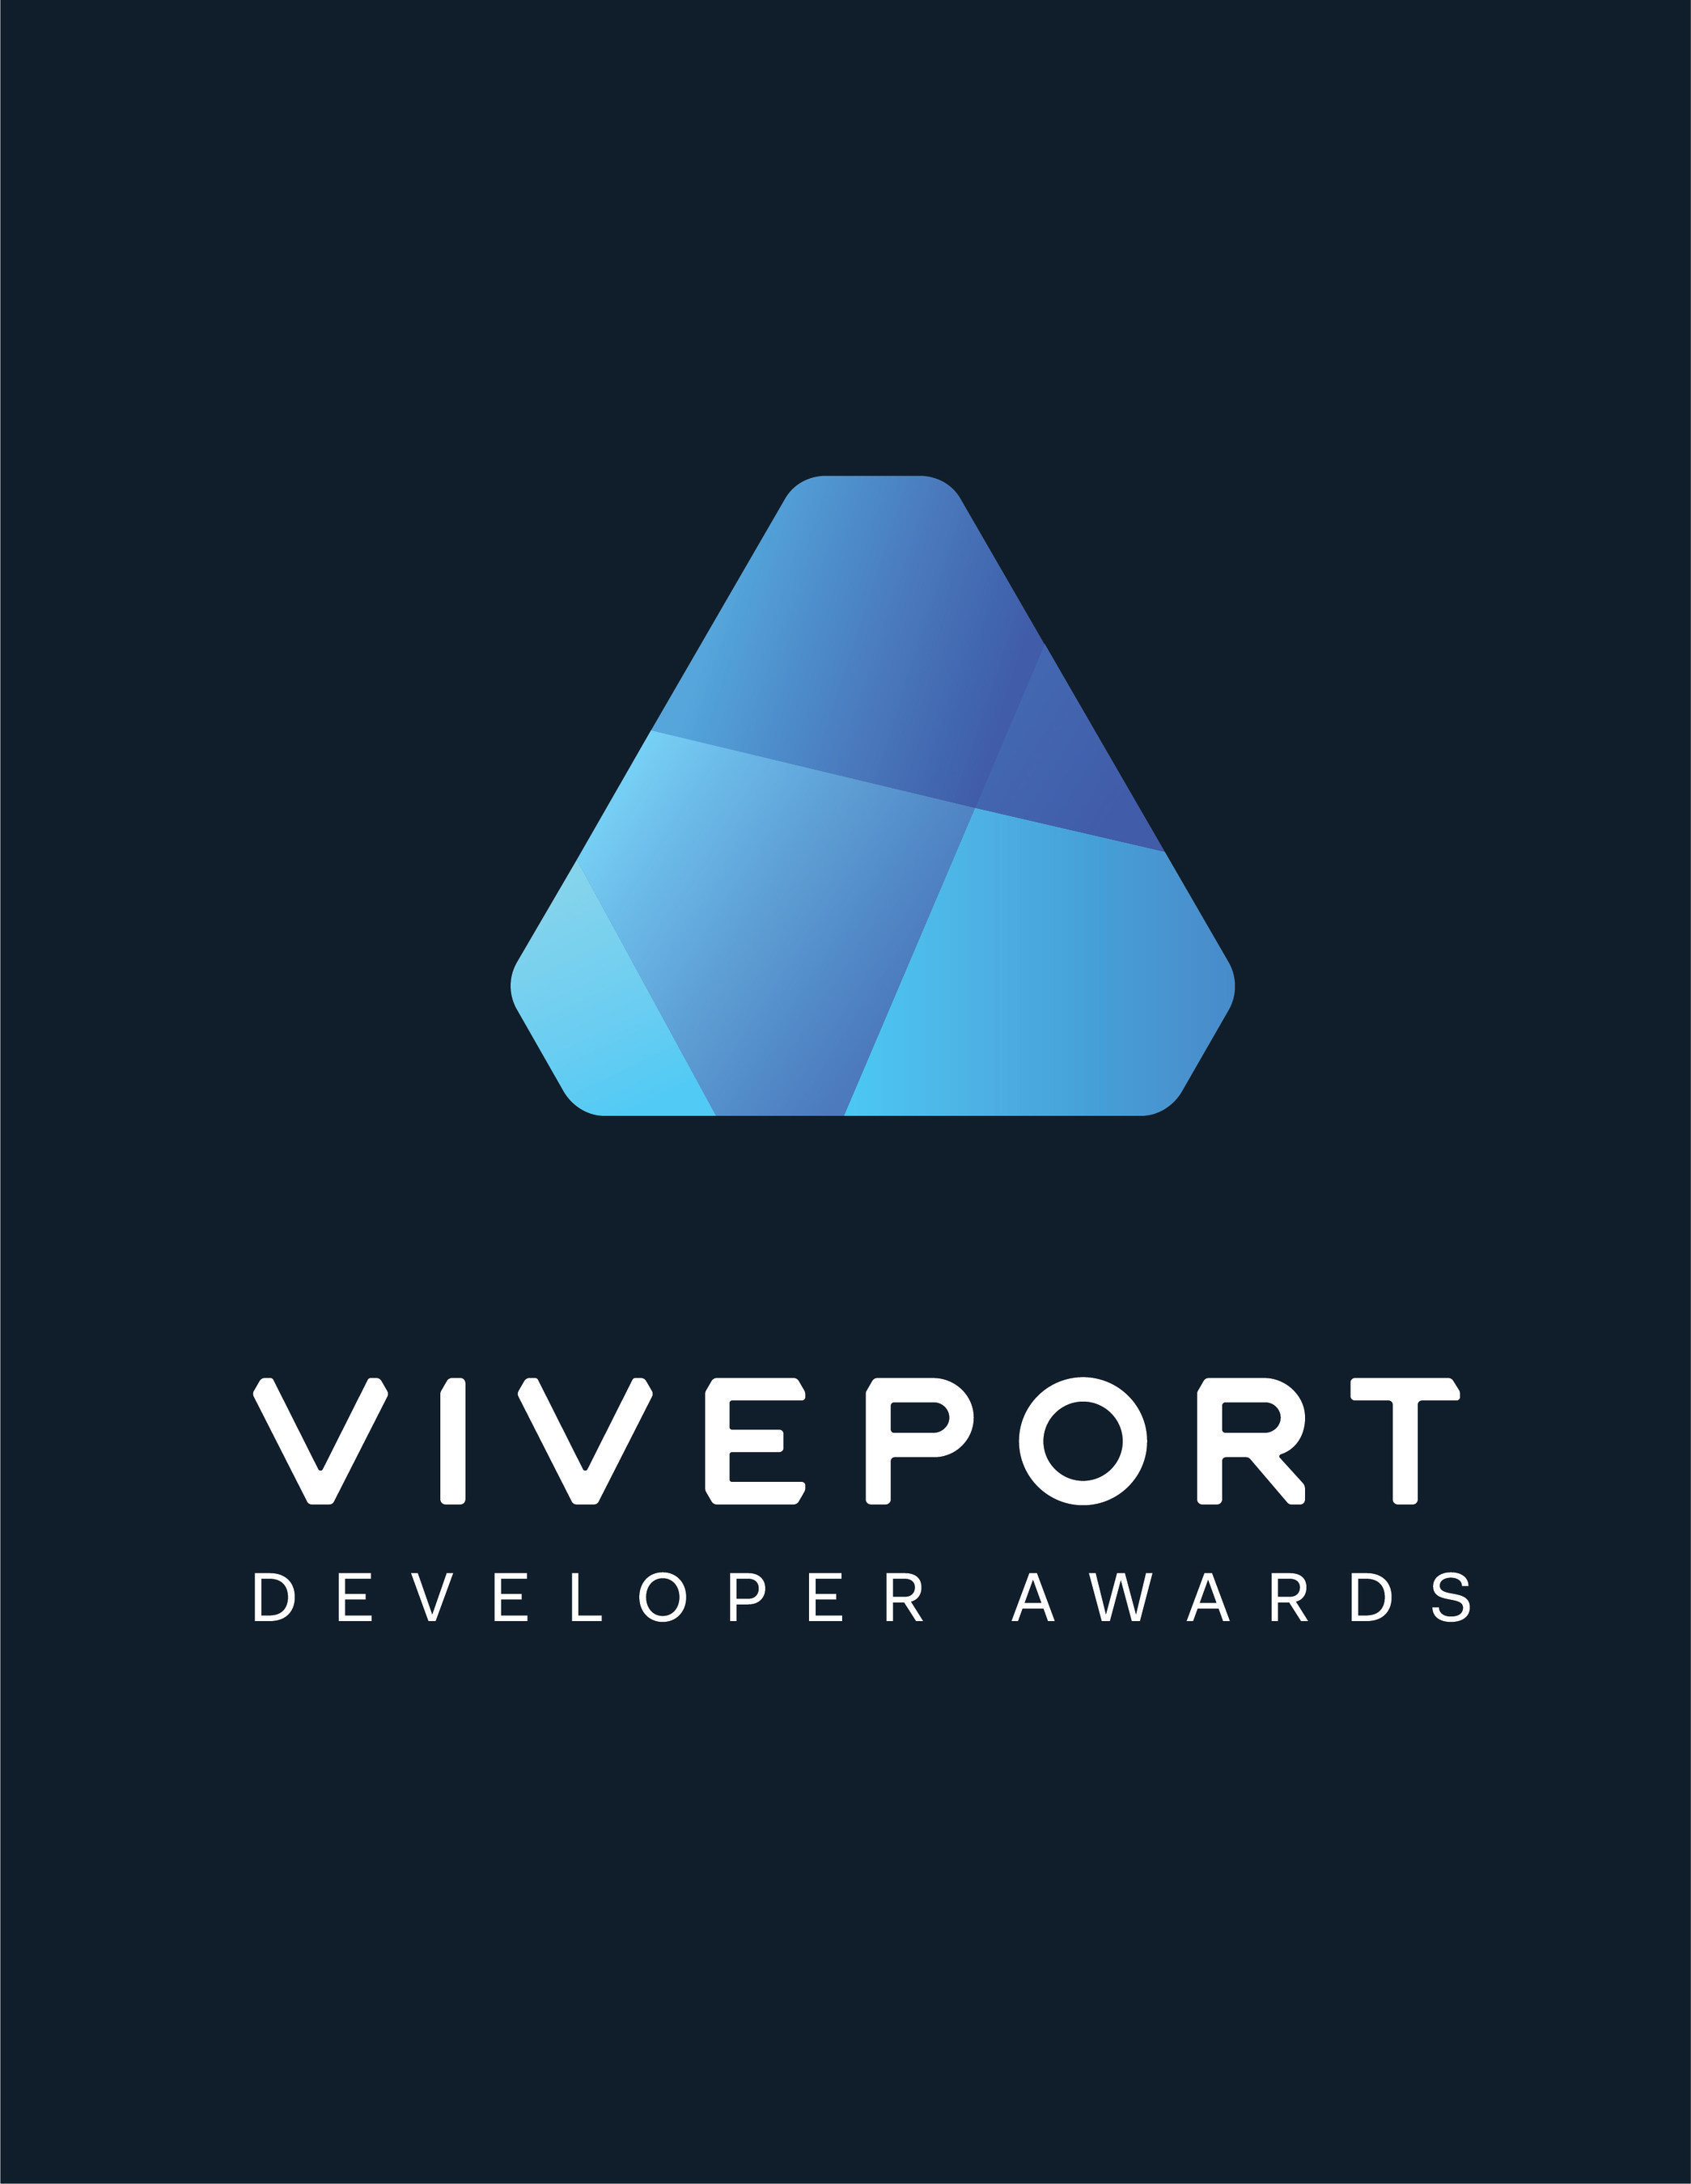 Viveport Developer Awards logo